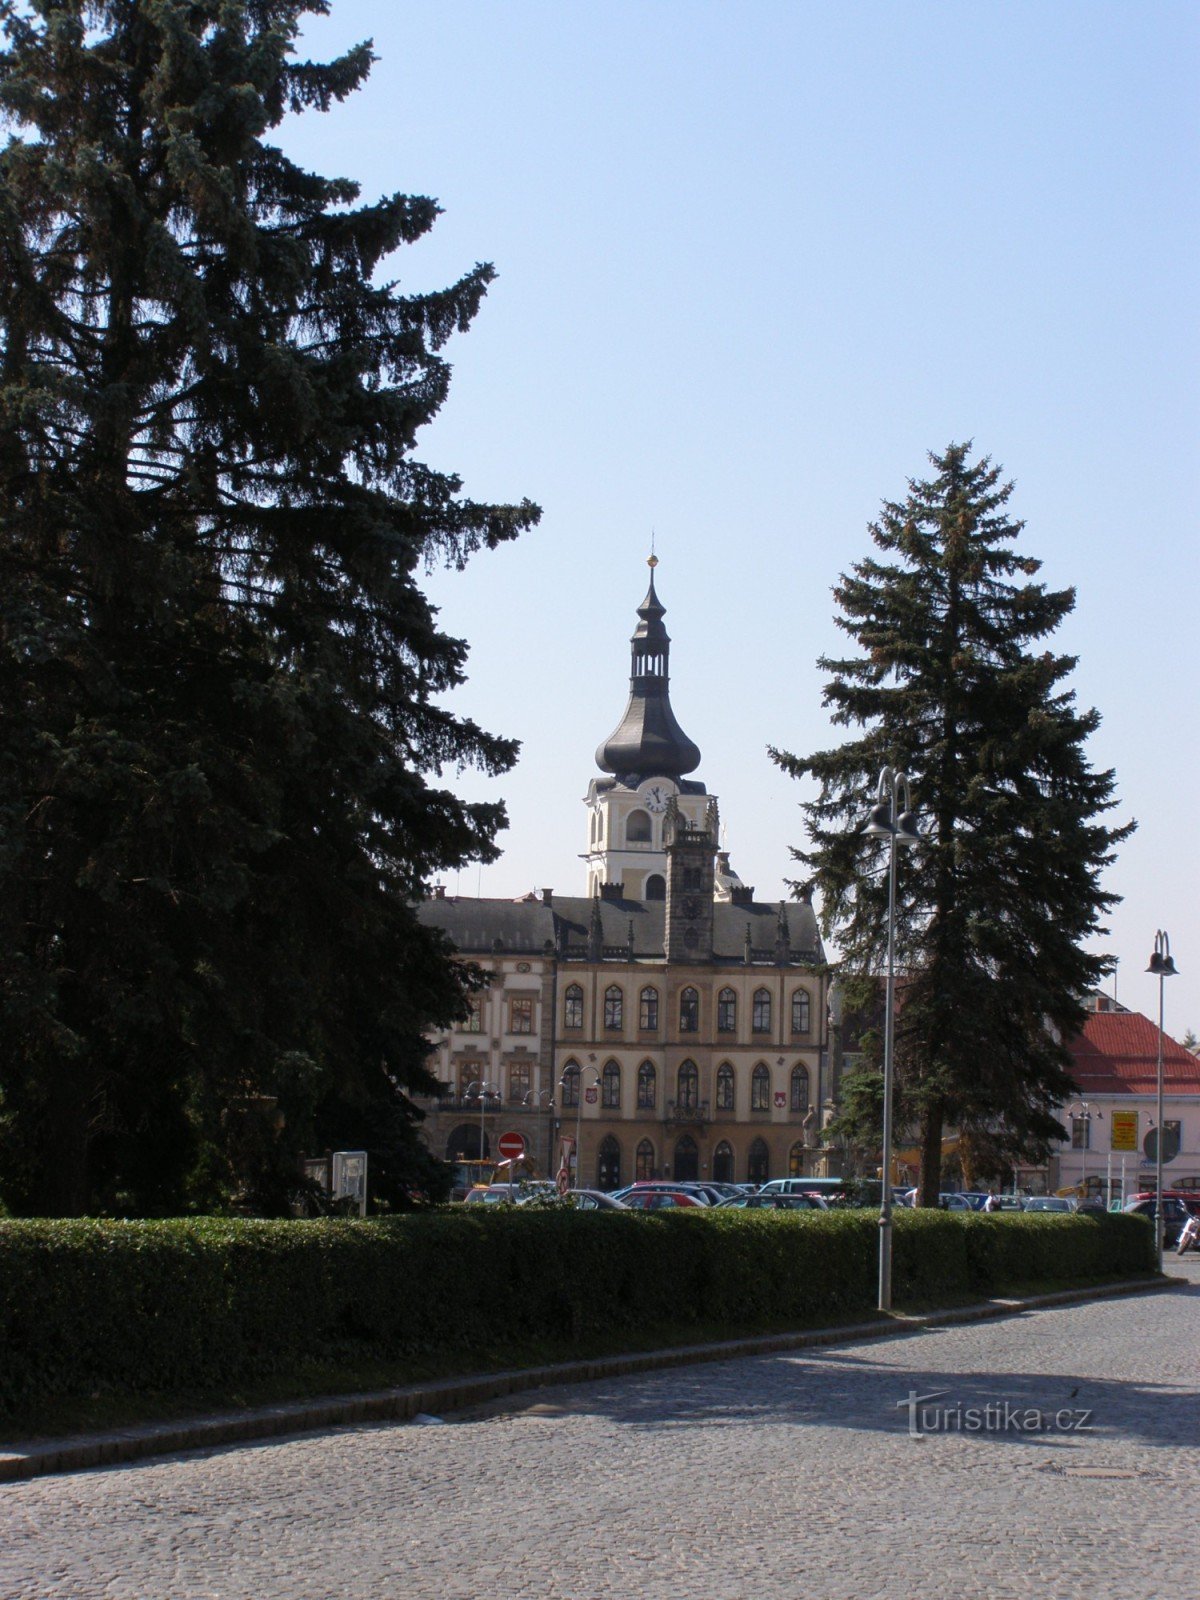 Hořice - Neogotska mestna hiša